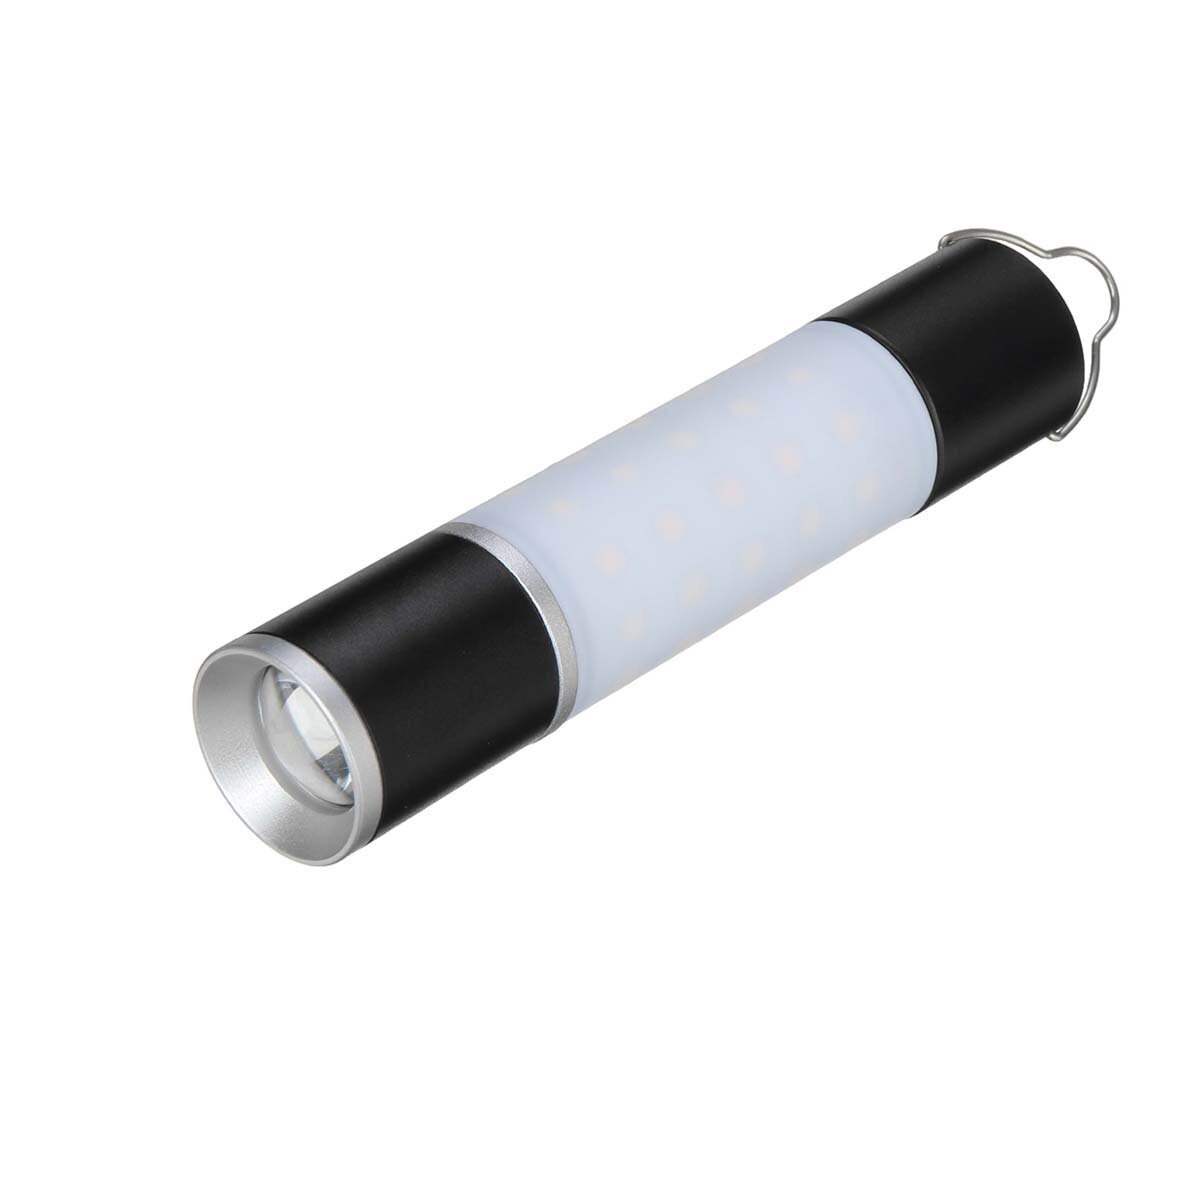 Lanterna de acampamento LED portátil em liga de alumínio e ABS, recarregável via USB, com zoom e opção de 5PCS/1PCS, para uso ao ar livre, em tendas ou como luz noturna portátil.